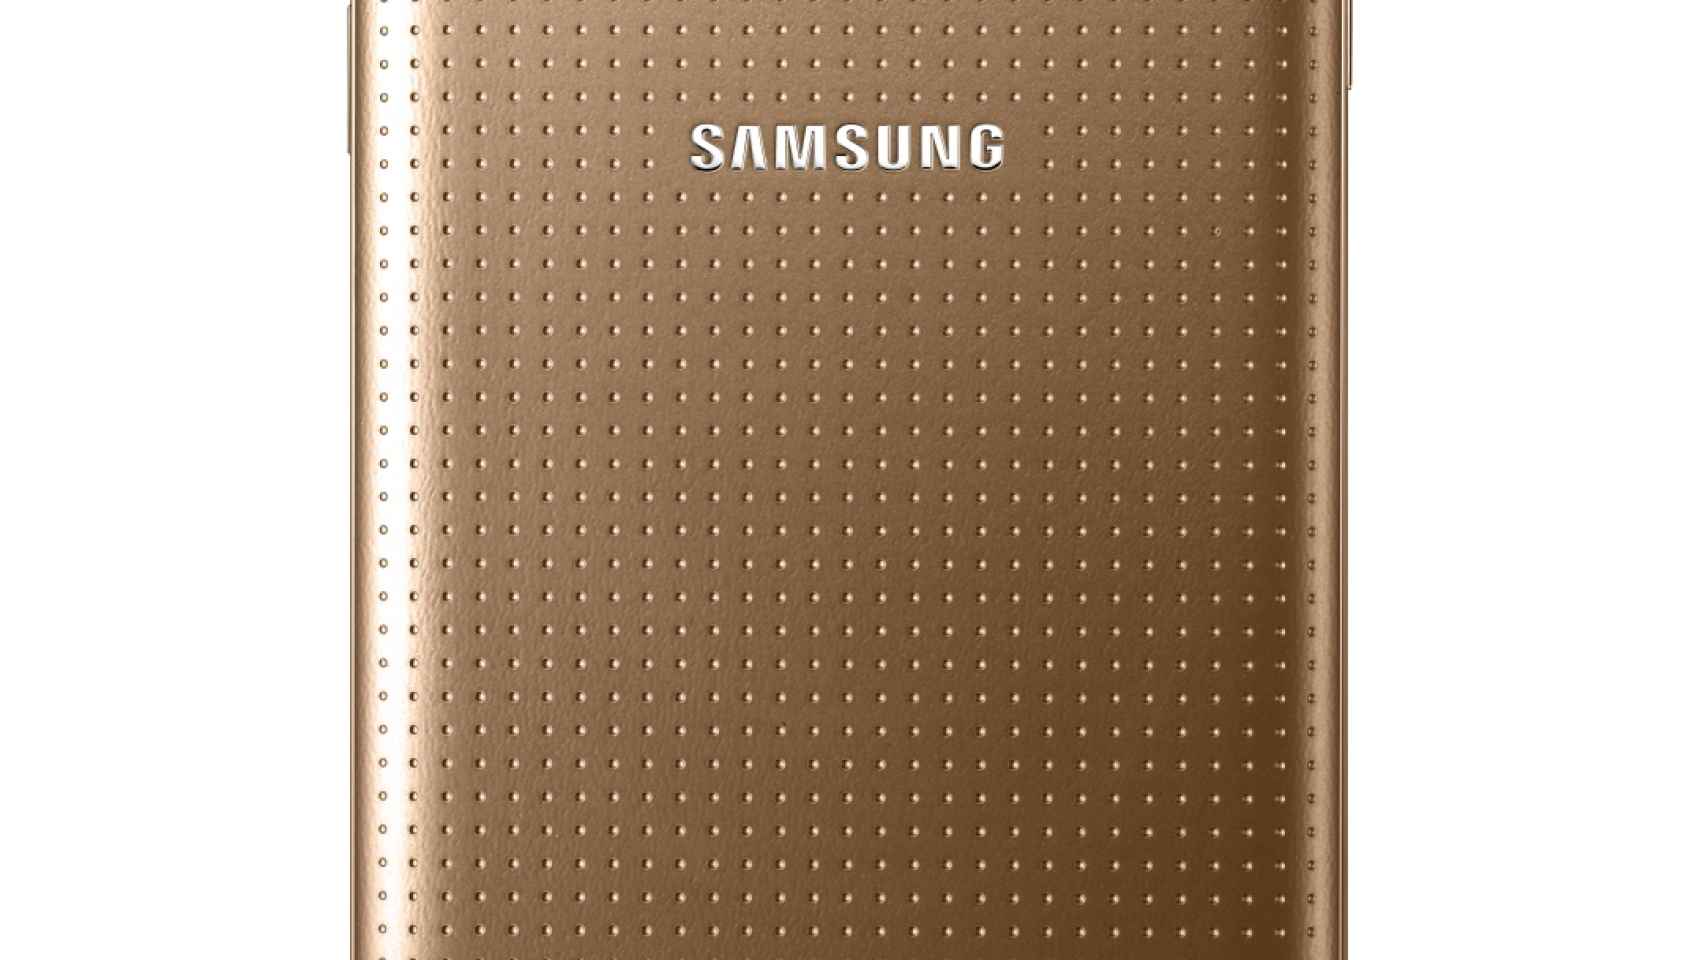 Samsung Galaxy S5 dorado será exclusivo de Vodafone